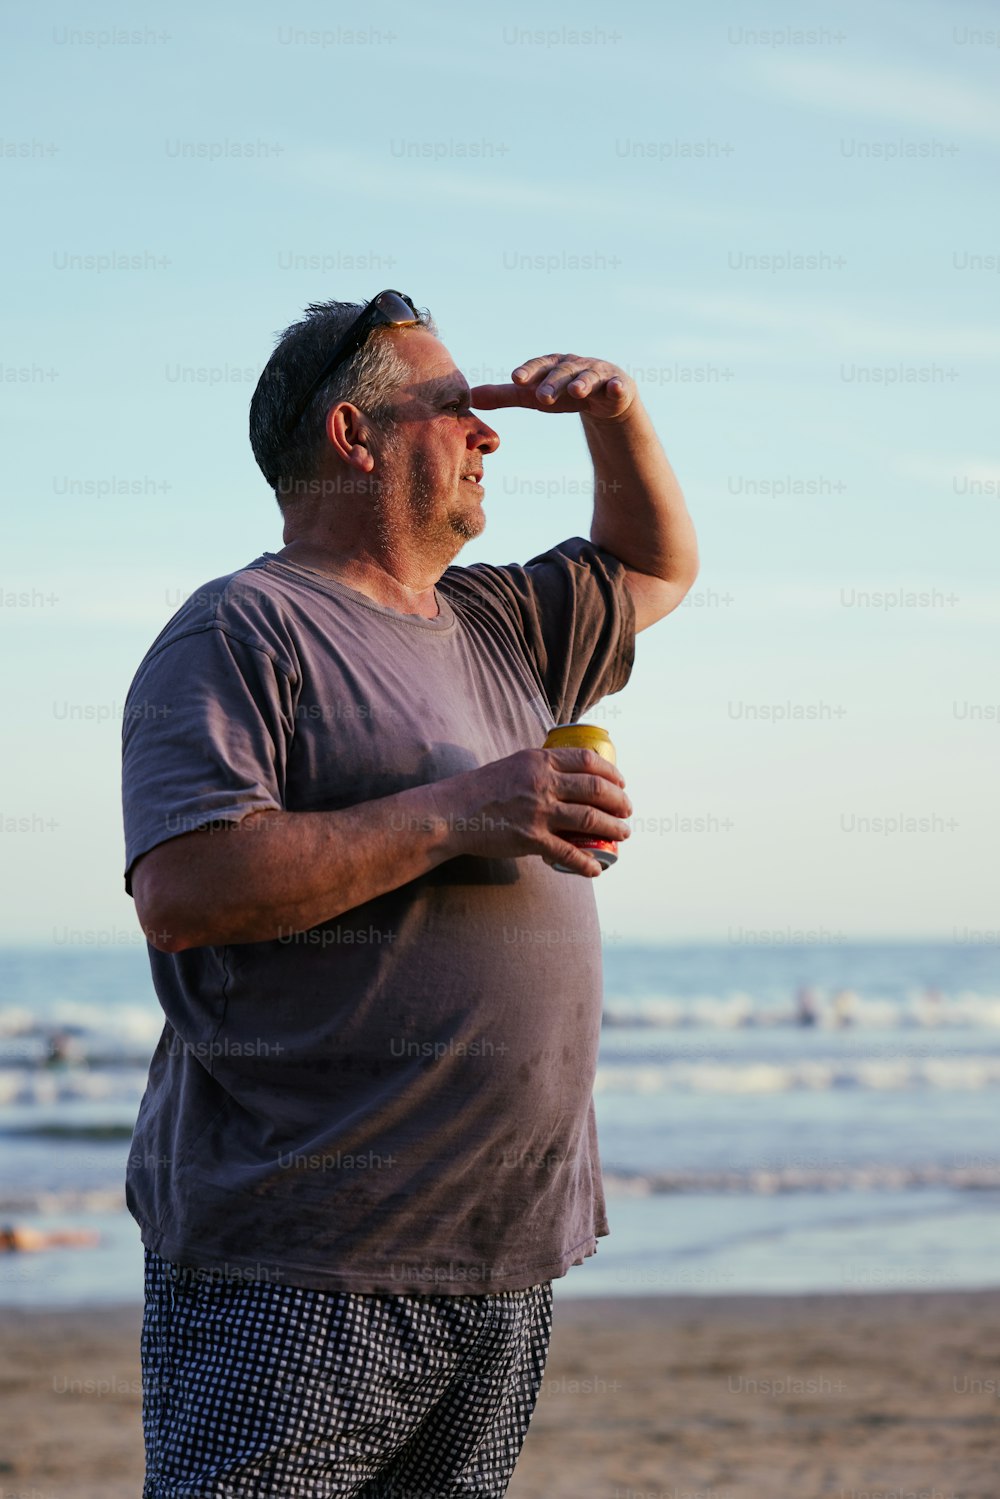 Un homme debout sur une plage tenant un frisbee jaune